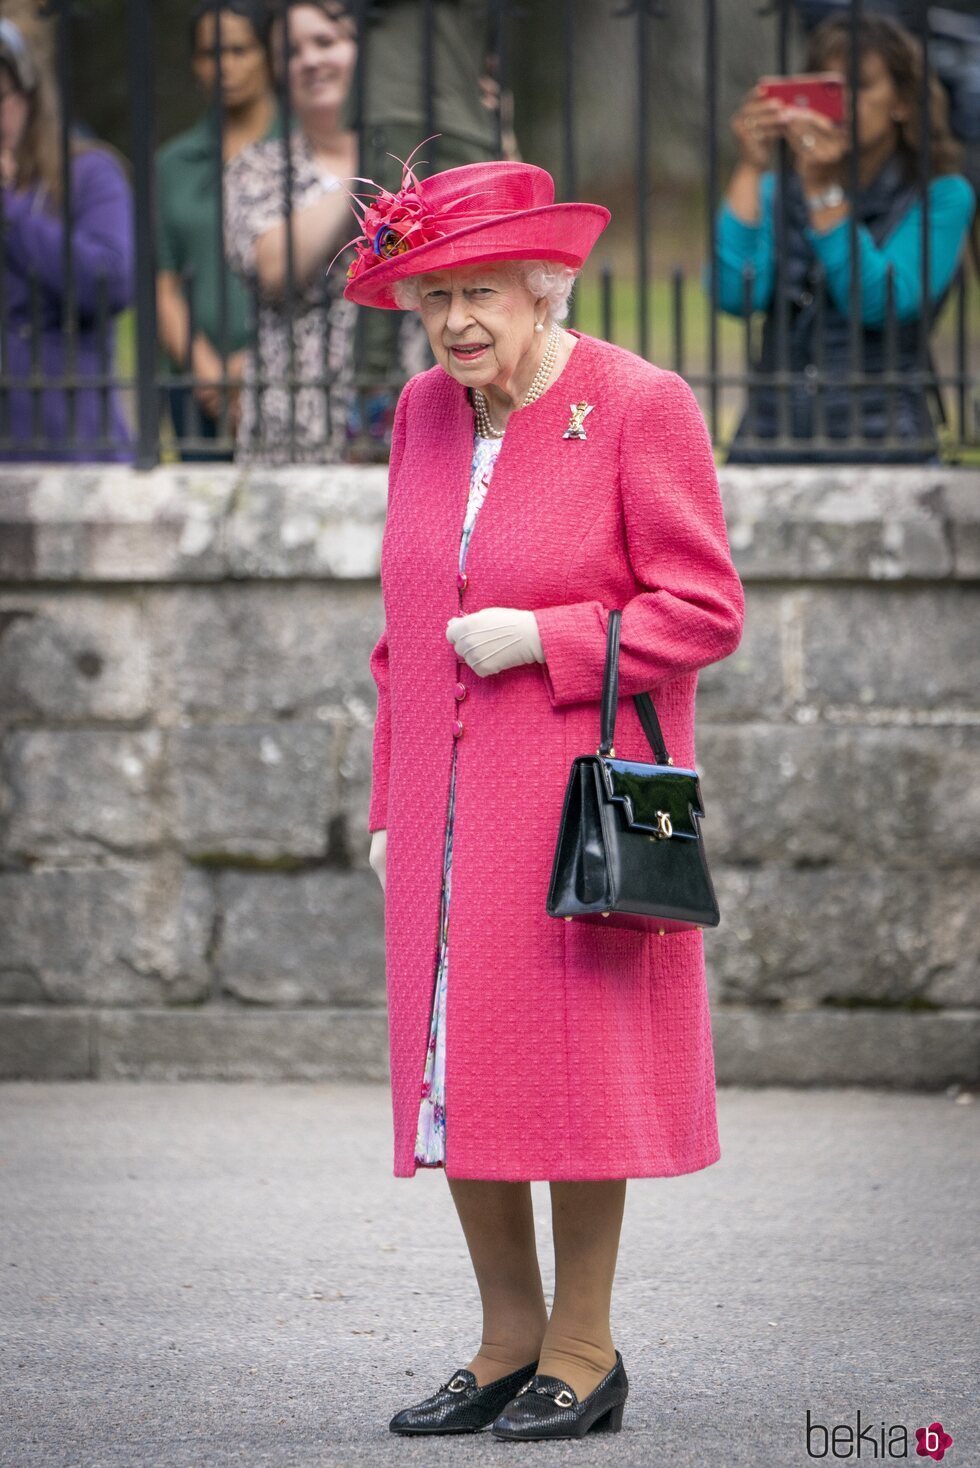 La Reina Isabel en su recibimiento oficial en Balmoral